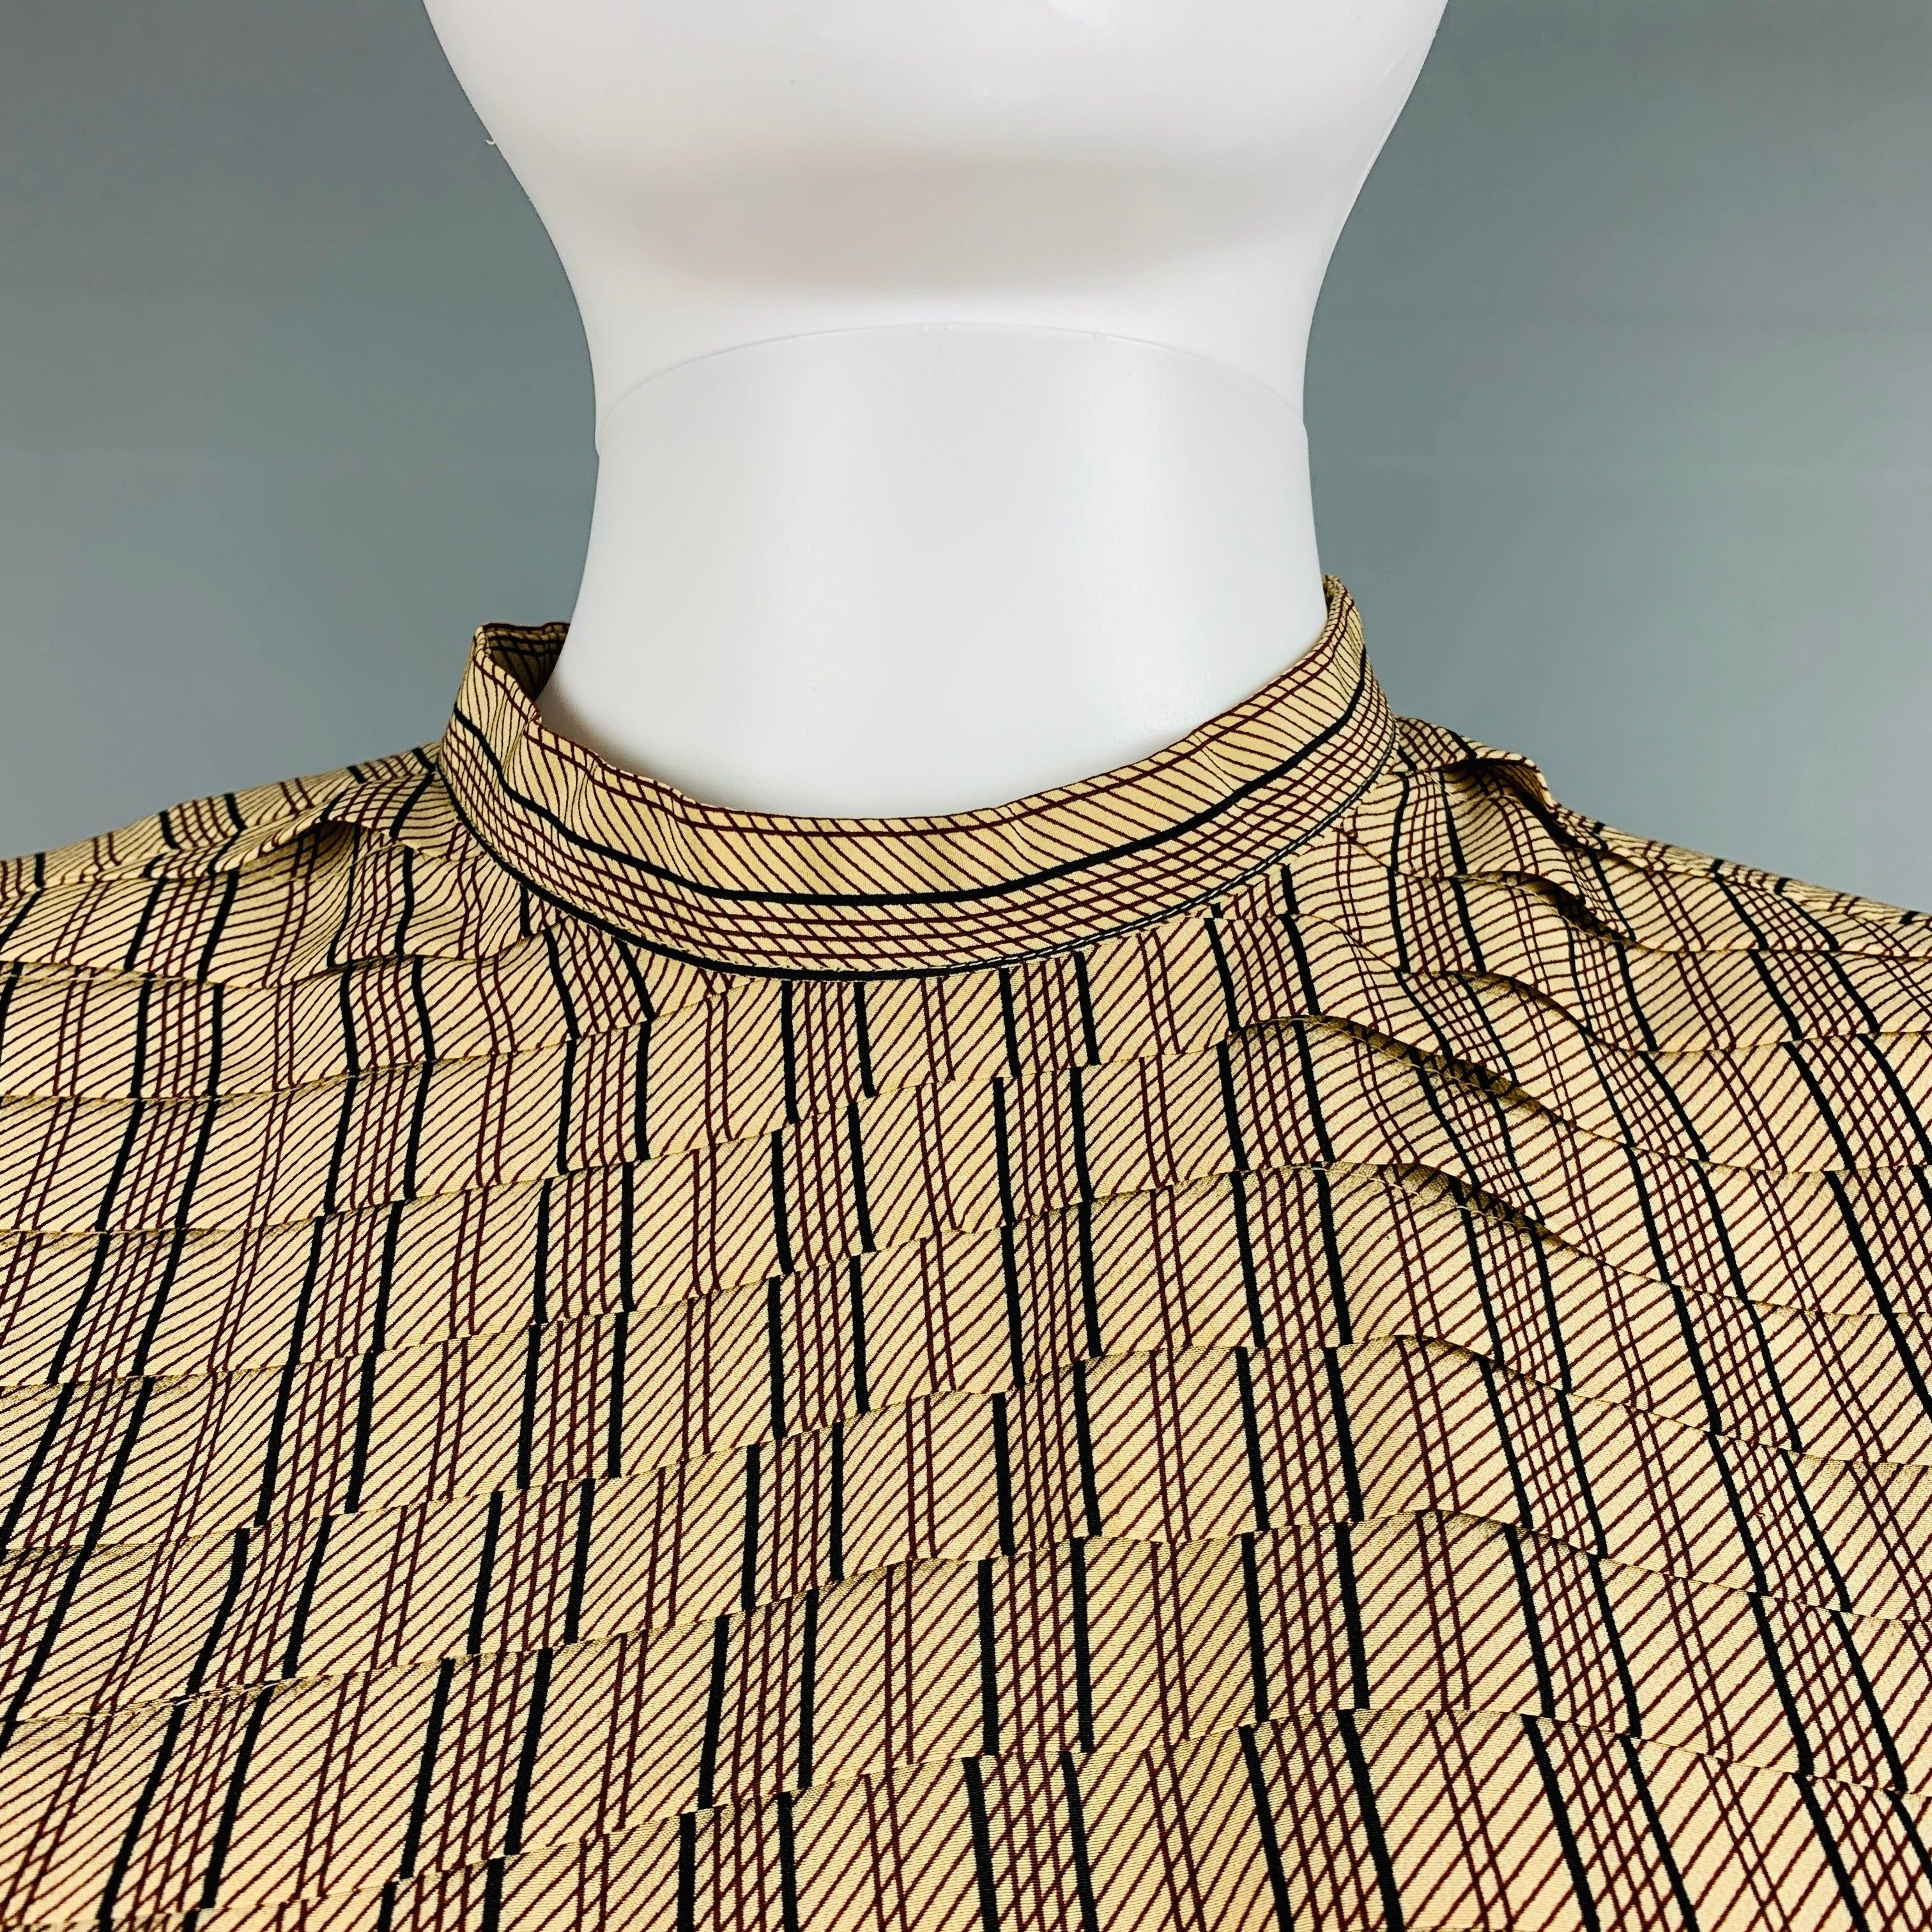 La blouse à manches longues en soie tissée rayée beige et bordeaux de GIORGIO ARMANI présente une texture plissée sur le devant, des épaulettes et une fermeture boutonnée au dos.
Très bon état.  

Marqué :   6 

Mesures : 
 
Épaule : 16 pouces